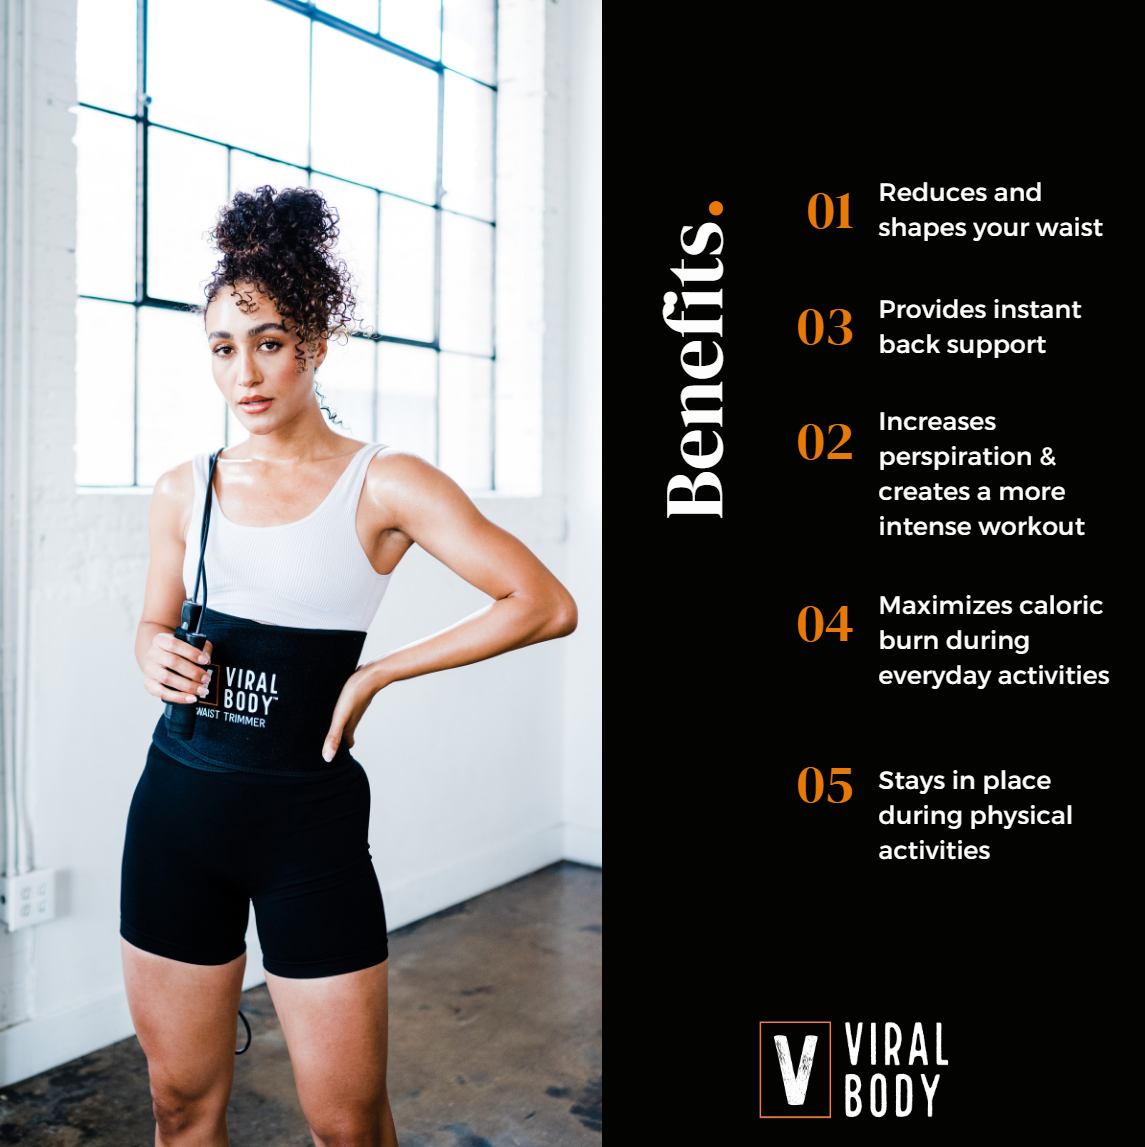 Viral Body® Waist Trimmer & Workout Enhancer Bundle